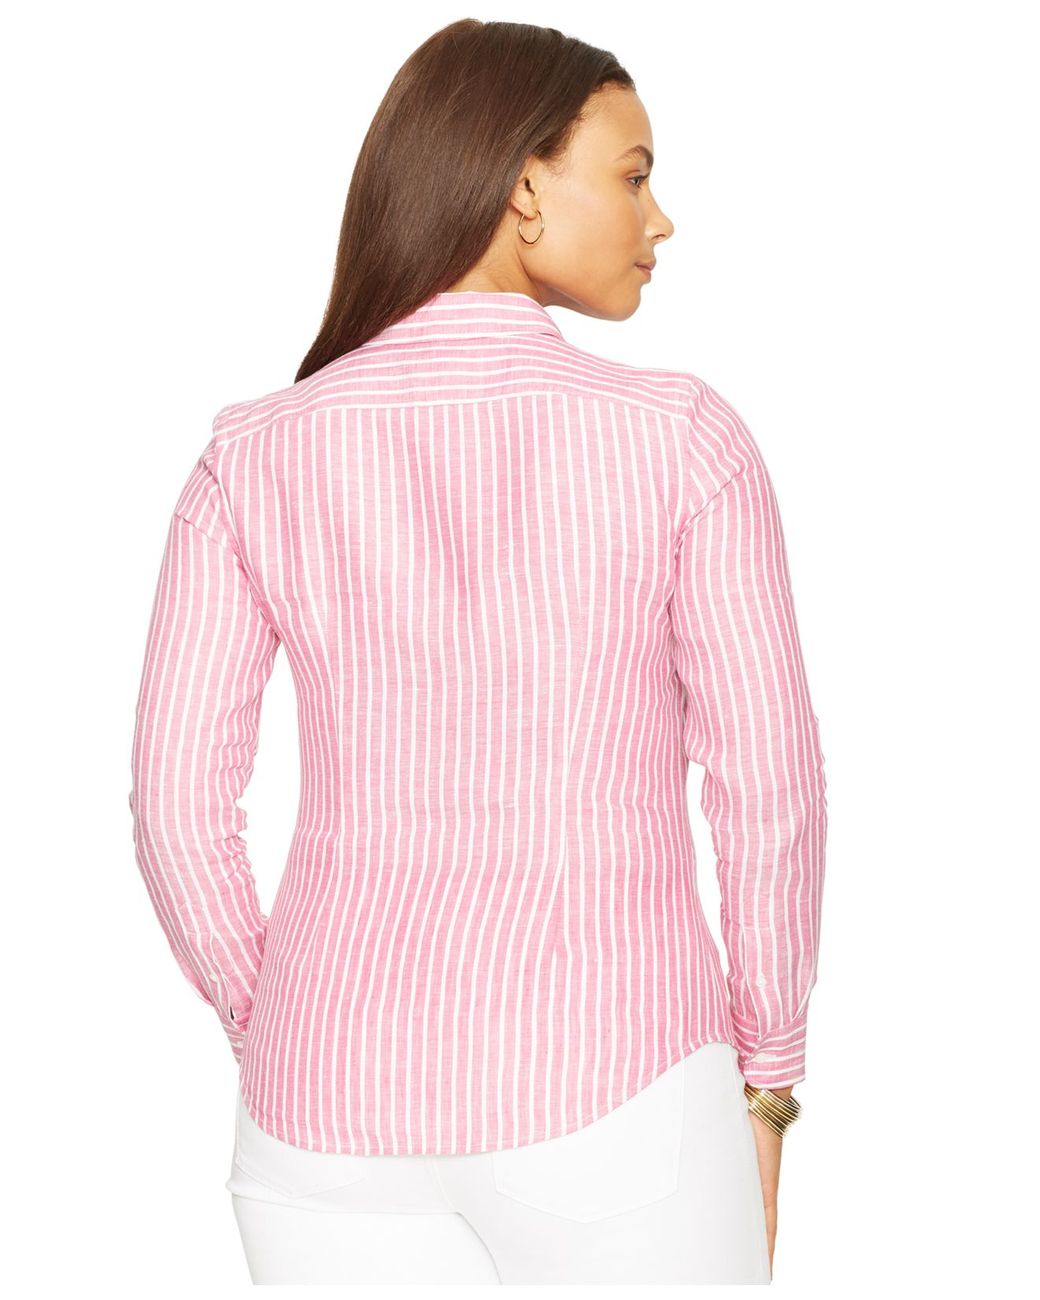 https://cdna.lystit.com/1040/1300/n/photos/a4b8-2014/12/08/lauren-ralph-lauren-pink-plus-size-linen-striped-shirt-product-1-26136386-1-525254201-normal.jpeg